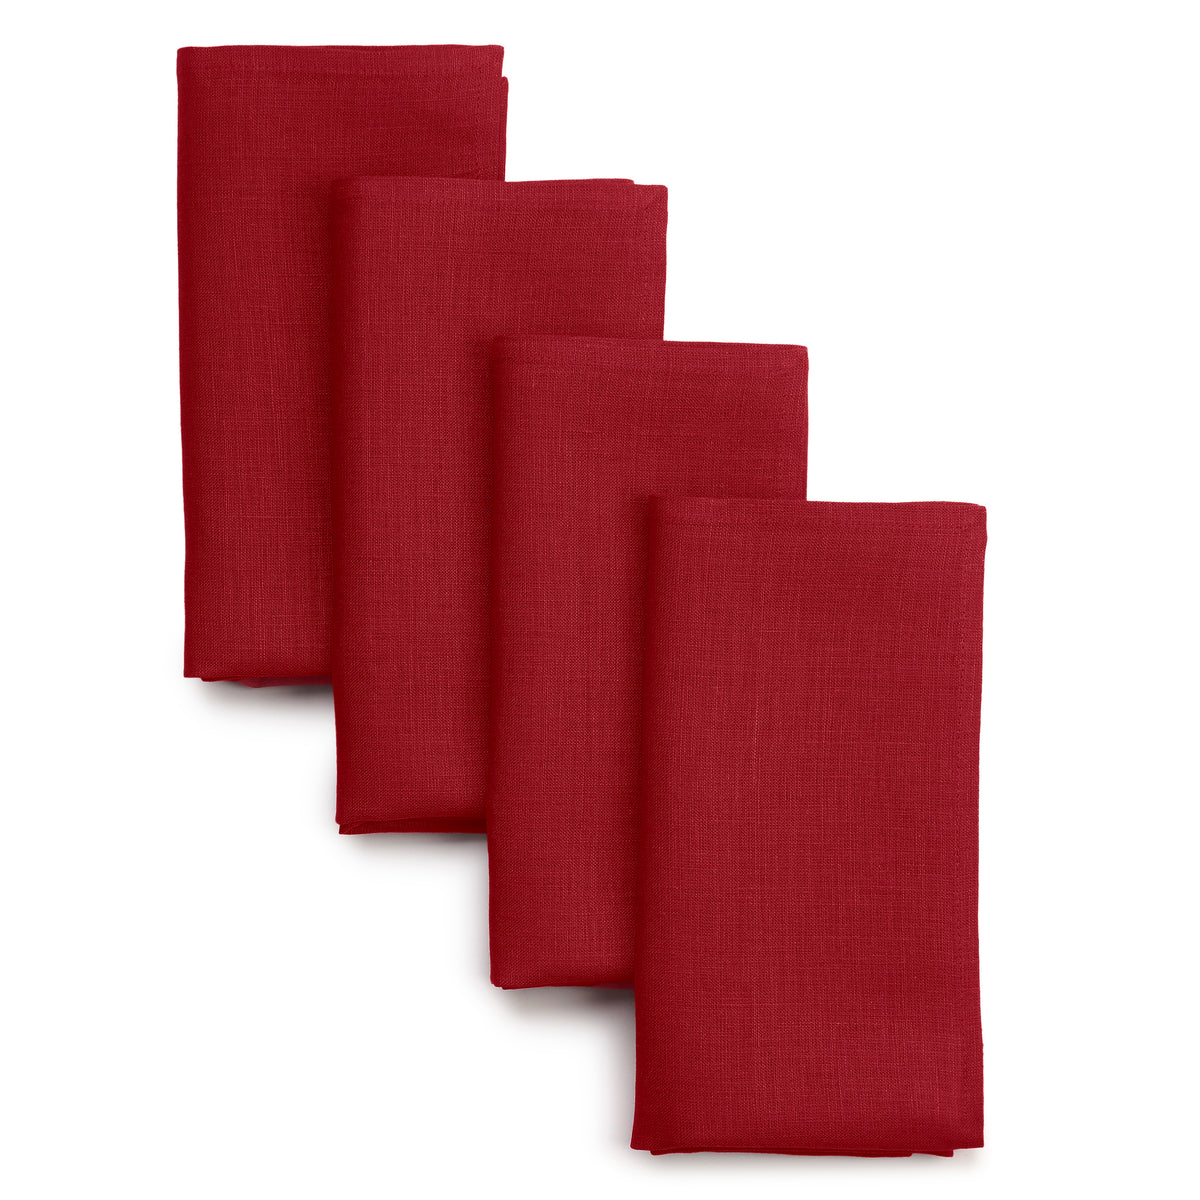 Red Linen Dinner Napkins 18 x 18 Inch Set of 4 - Hemmed